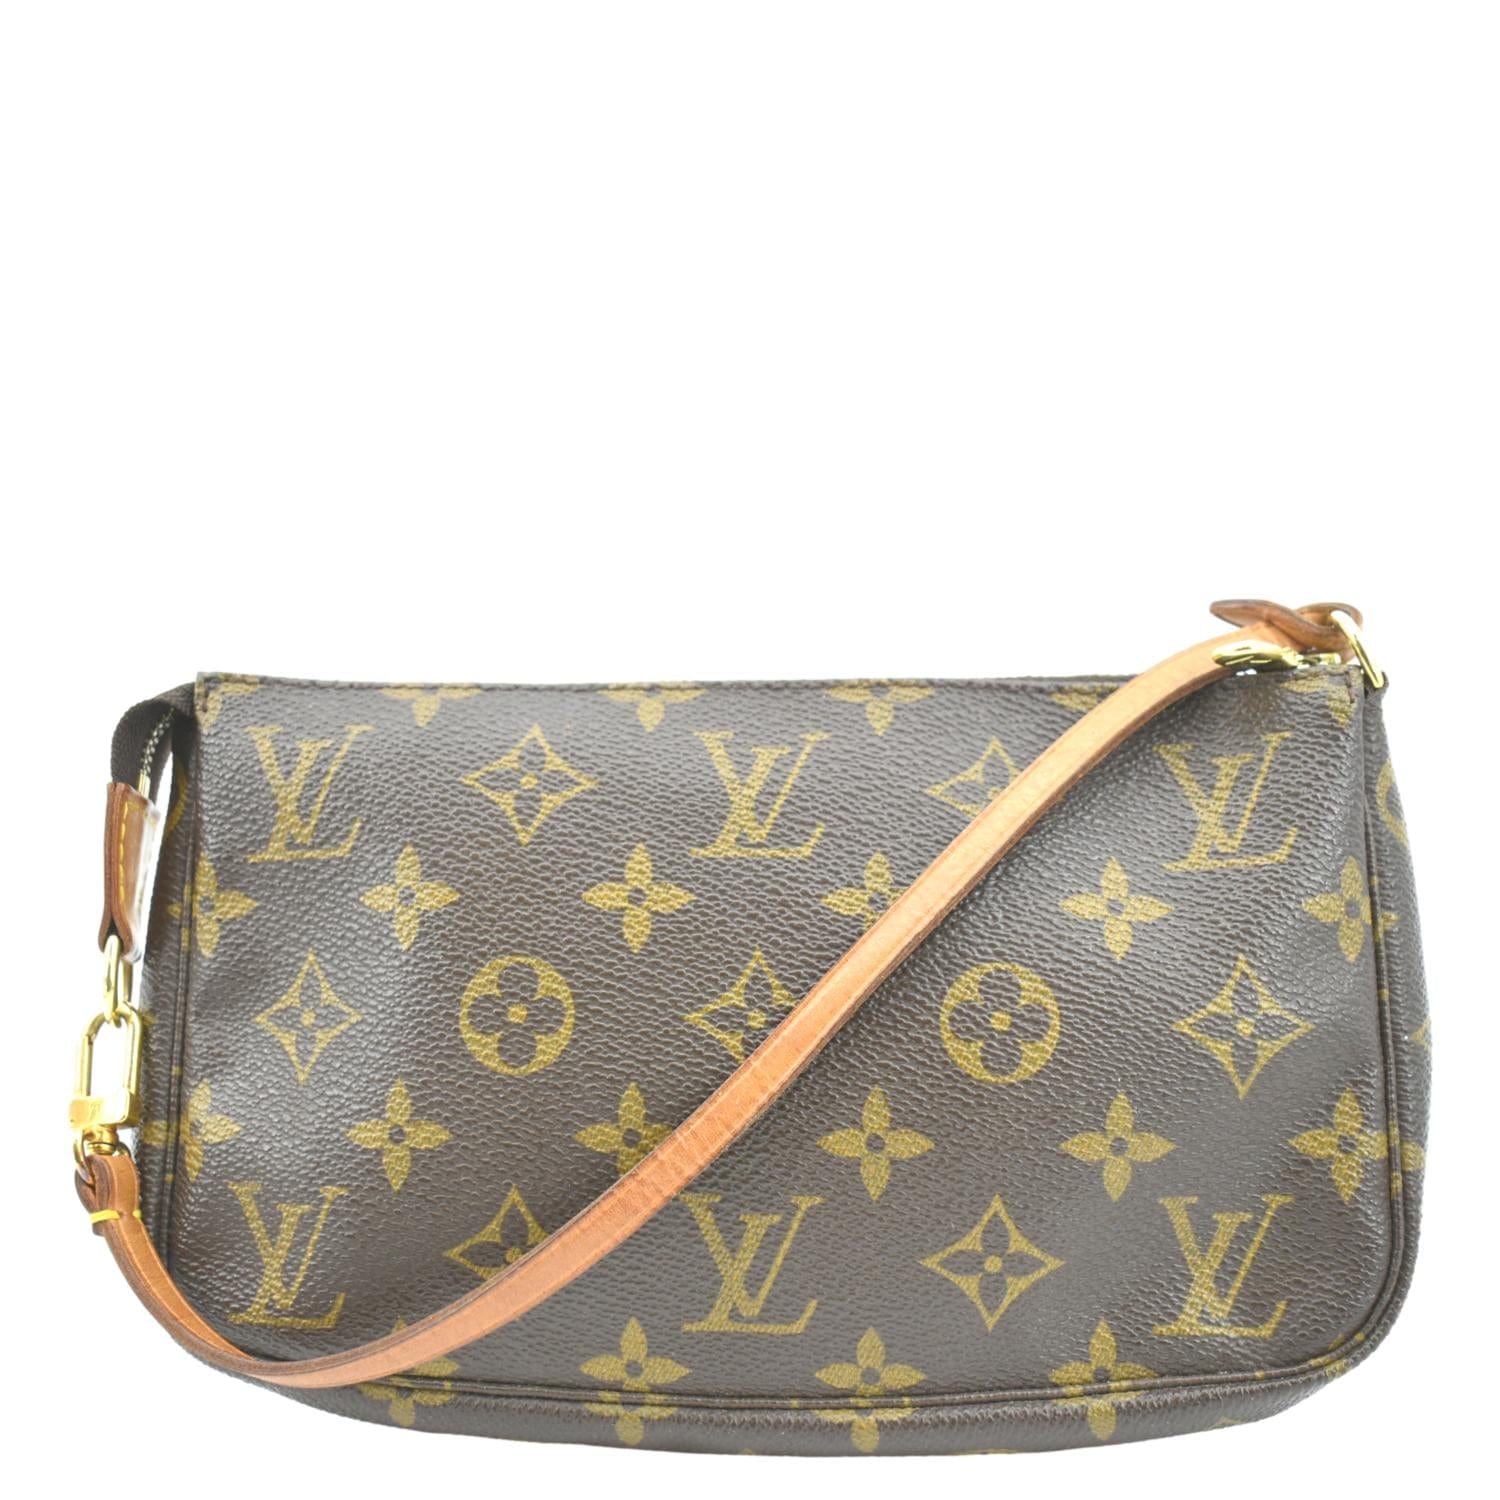 Sofia coppola leather handbag Louis Vuitton Yellow in Leather